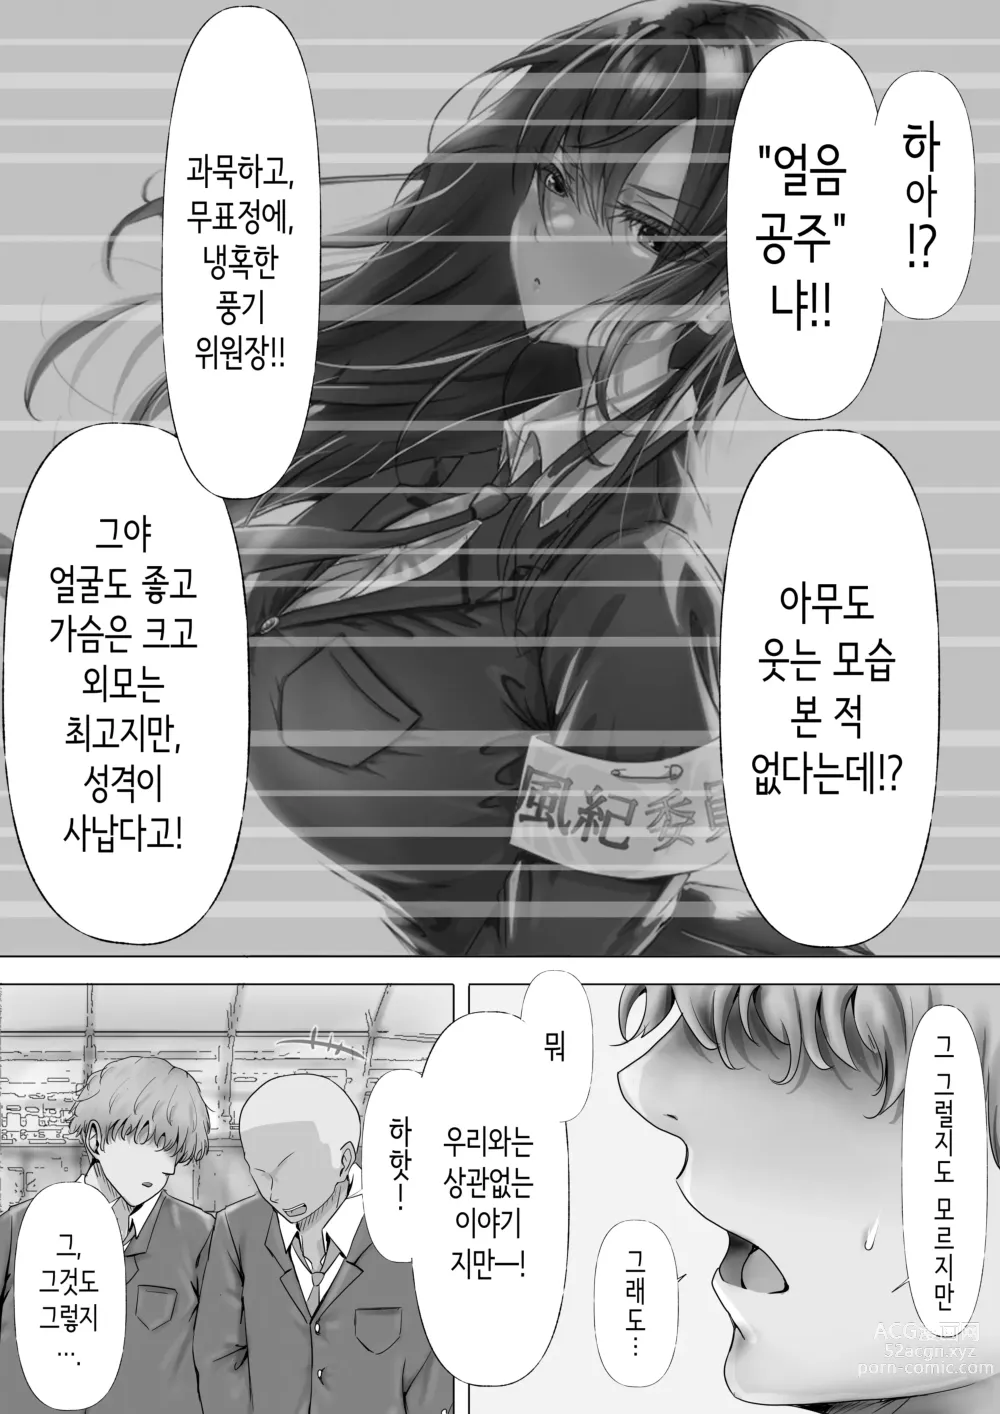 Page 5 of doujinshi 과묵하고 긴 흑발의 거유 풍기위원장을 미친듯이 따먹고 싶다